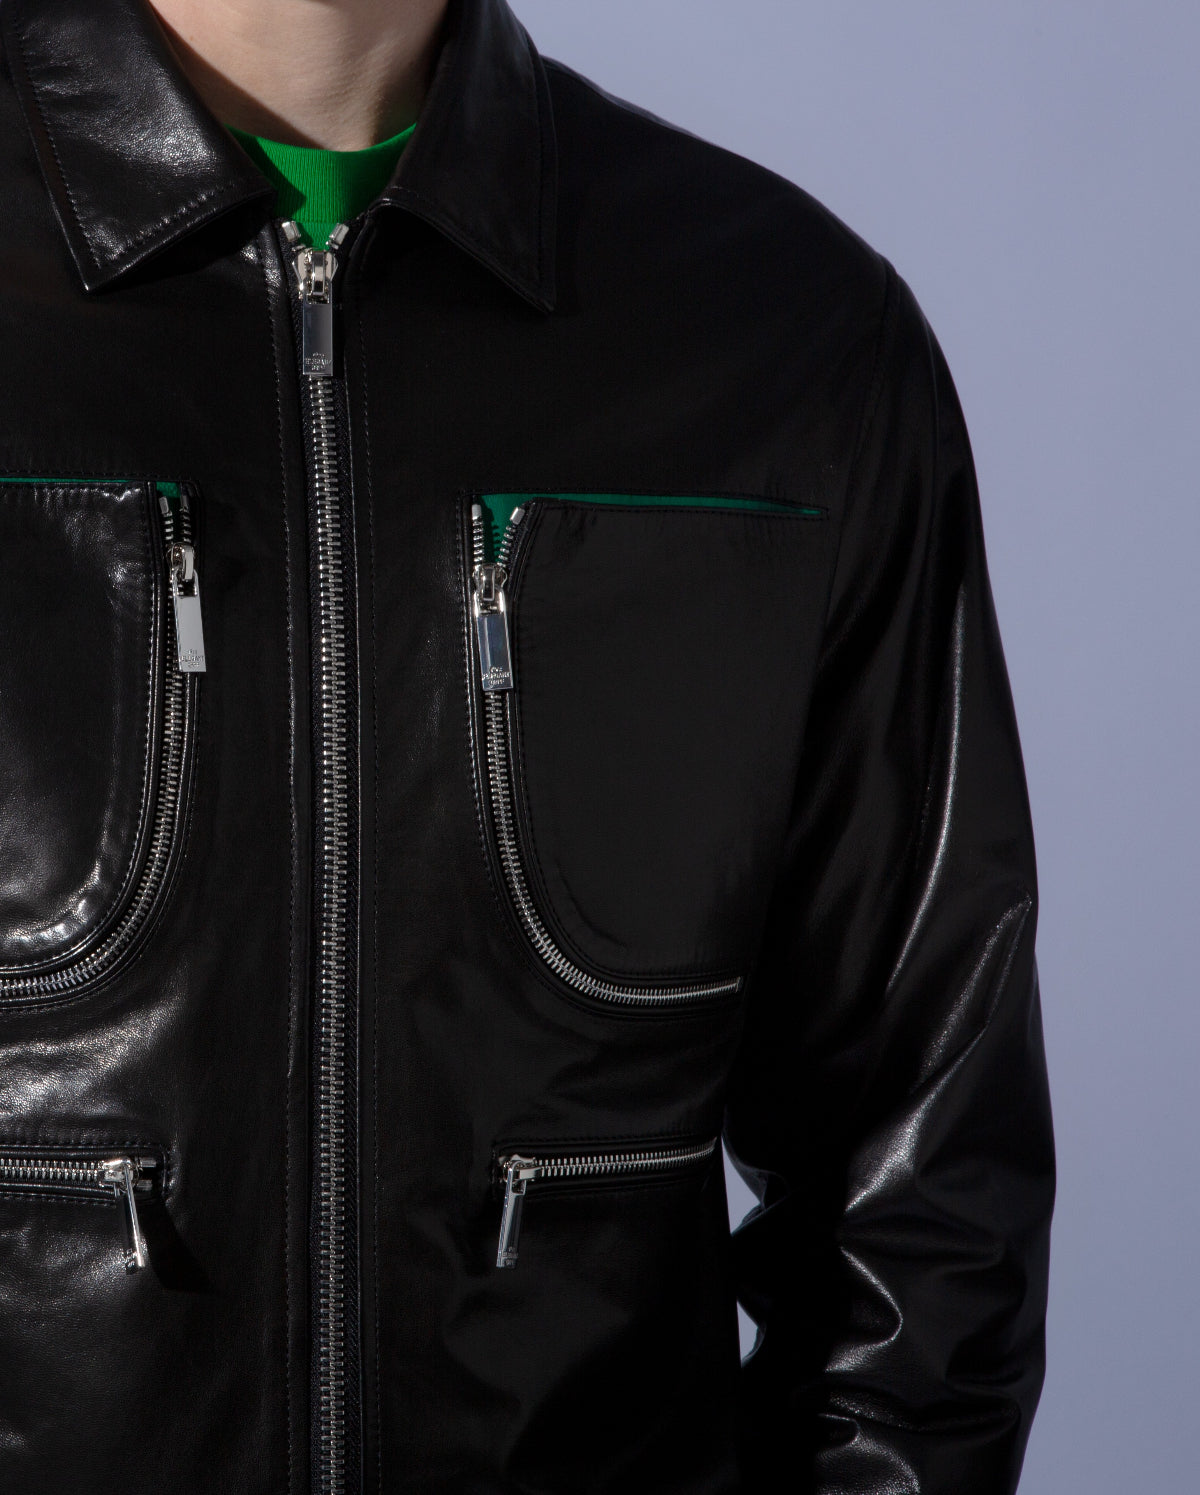 Black Retro Leather Bomber Jackets Motorcycle Coats